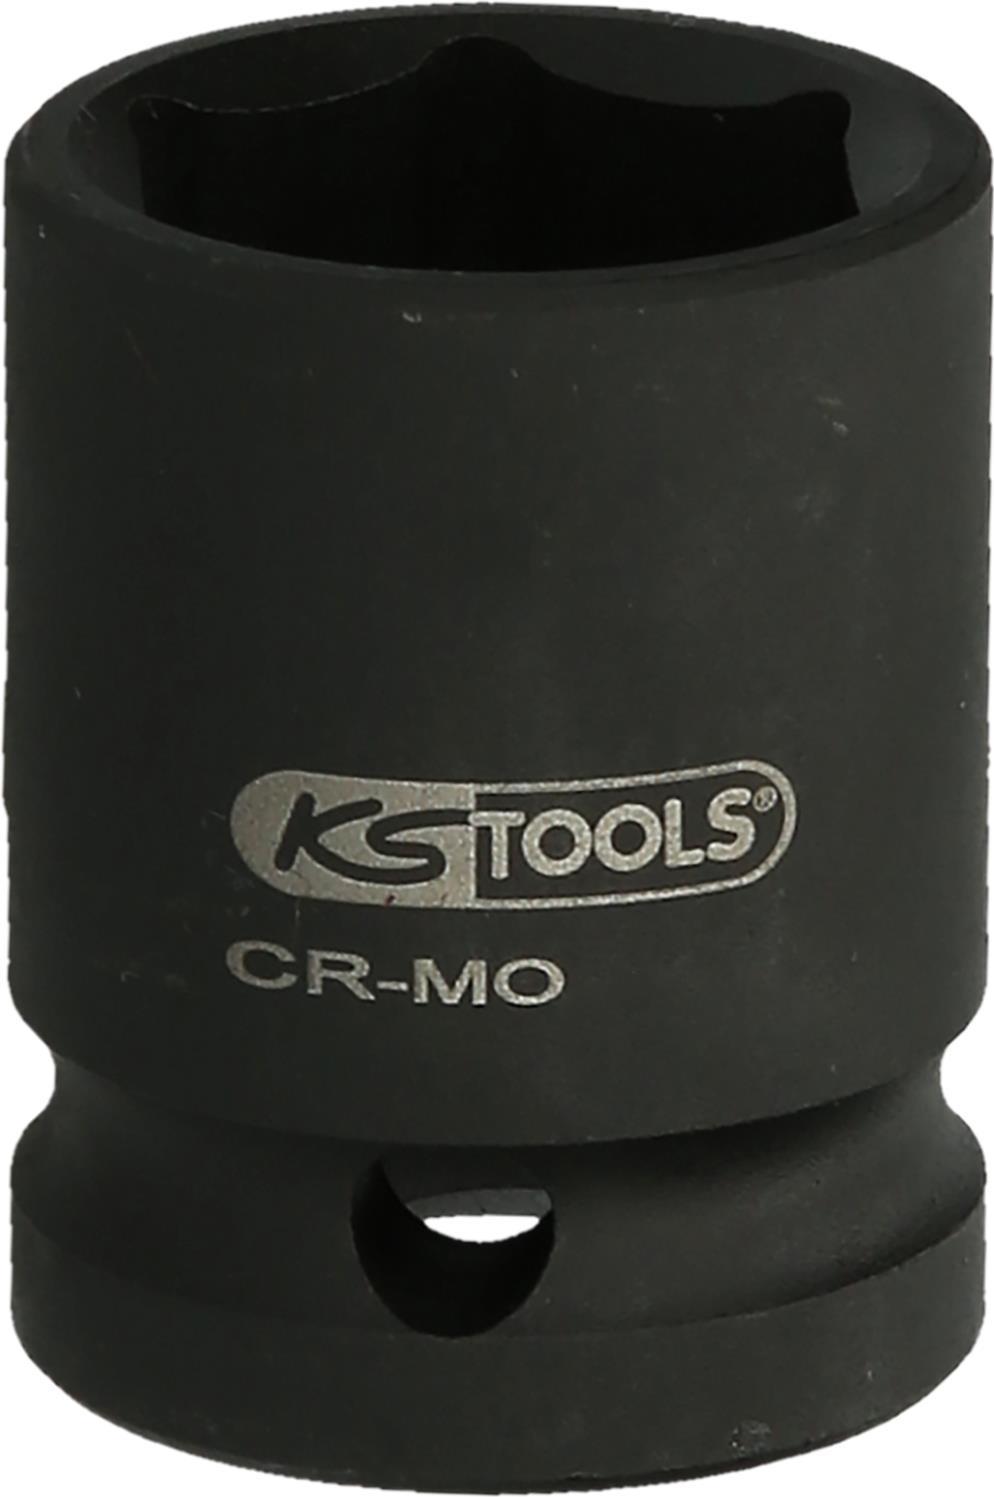 KS TOOLS Werkzeuge-Maschinen GmbH 1.1/2\" Sechskant-Kraft-Stecknuss, 60 mm, kurz (515.2137)